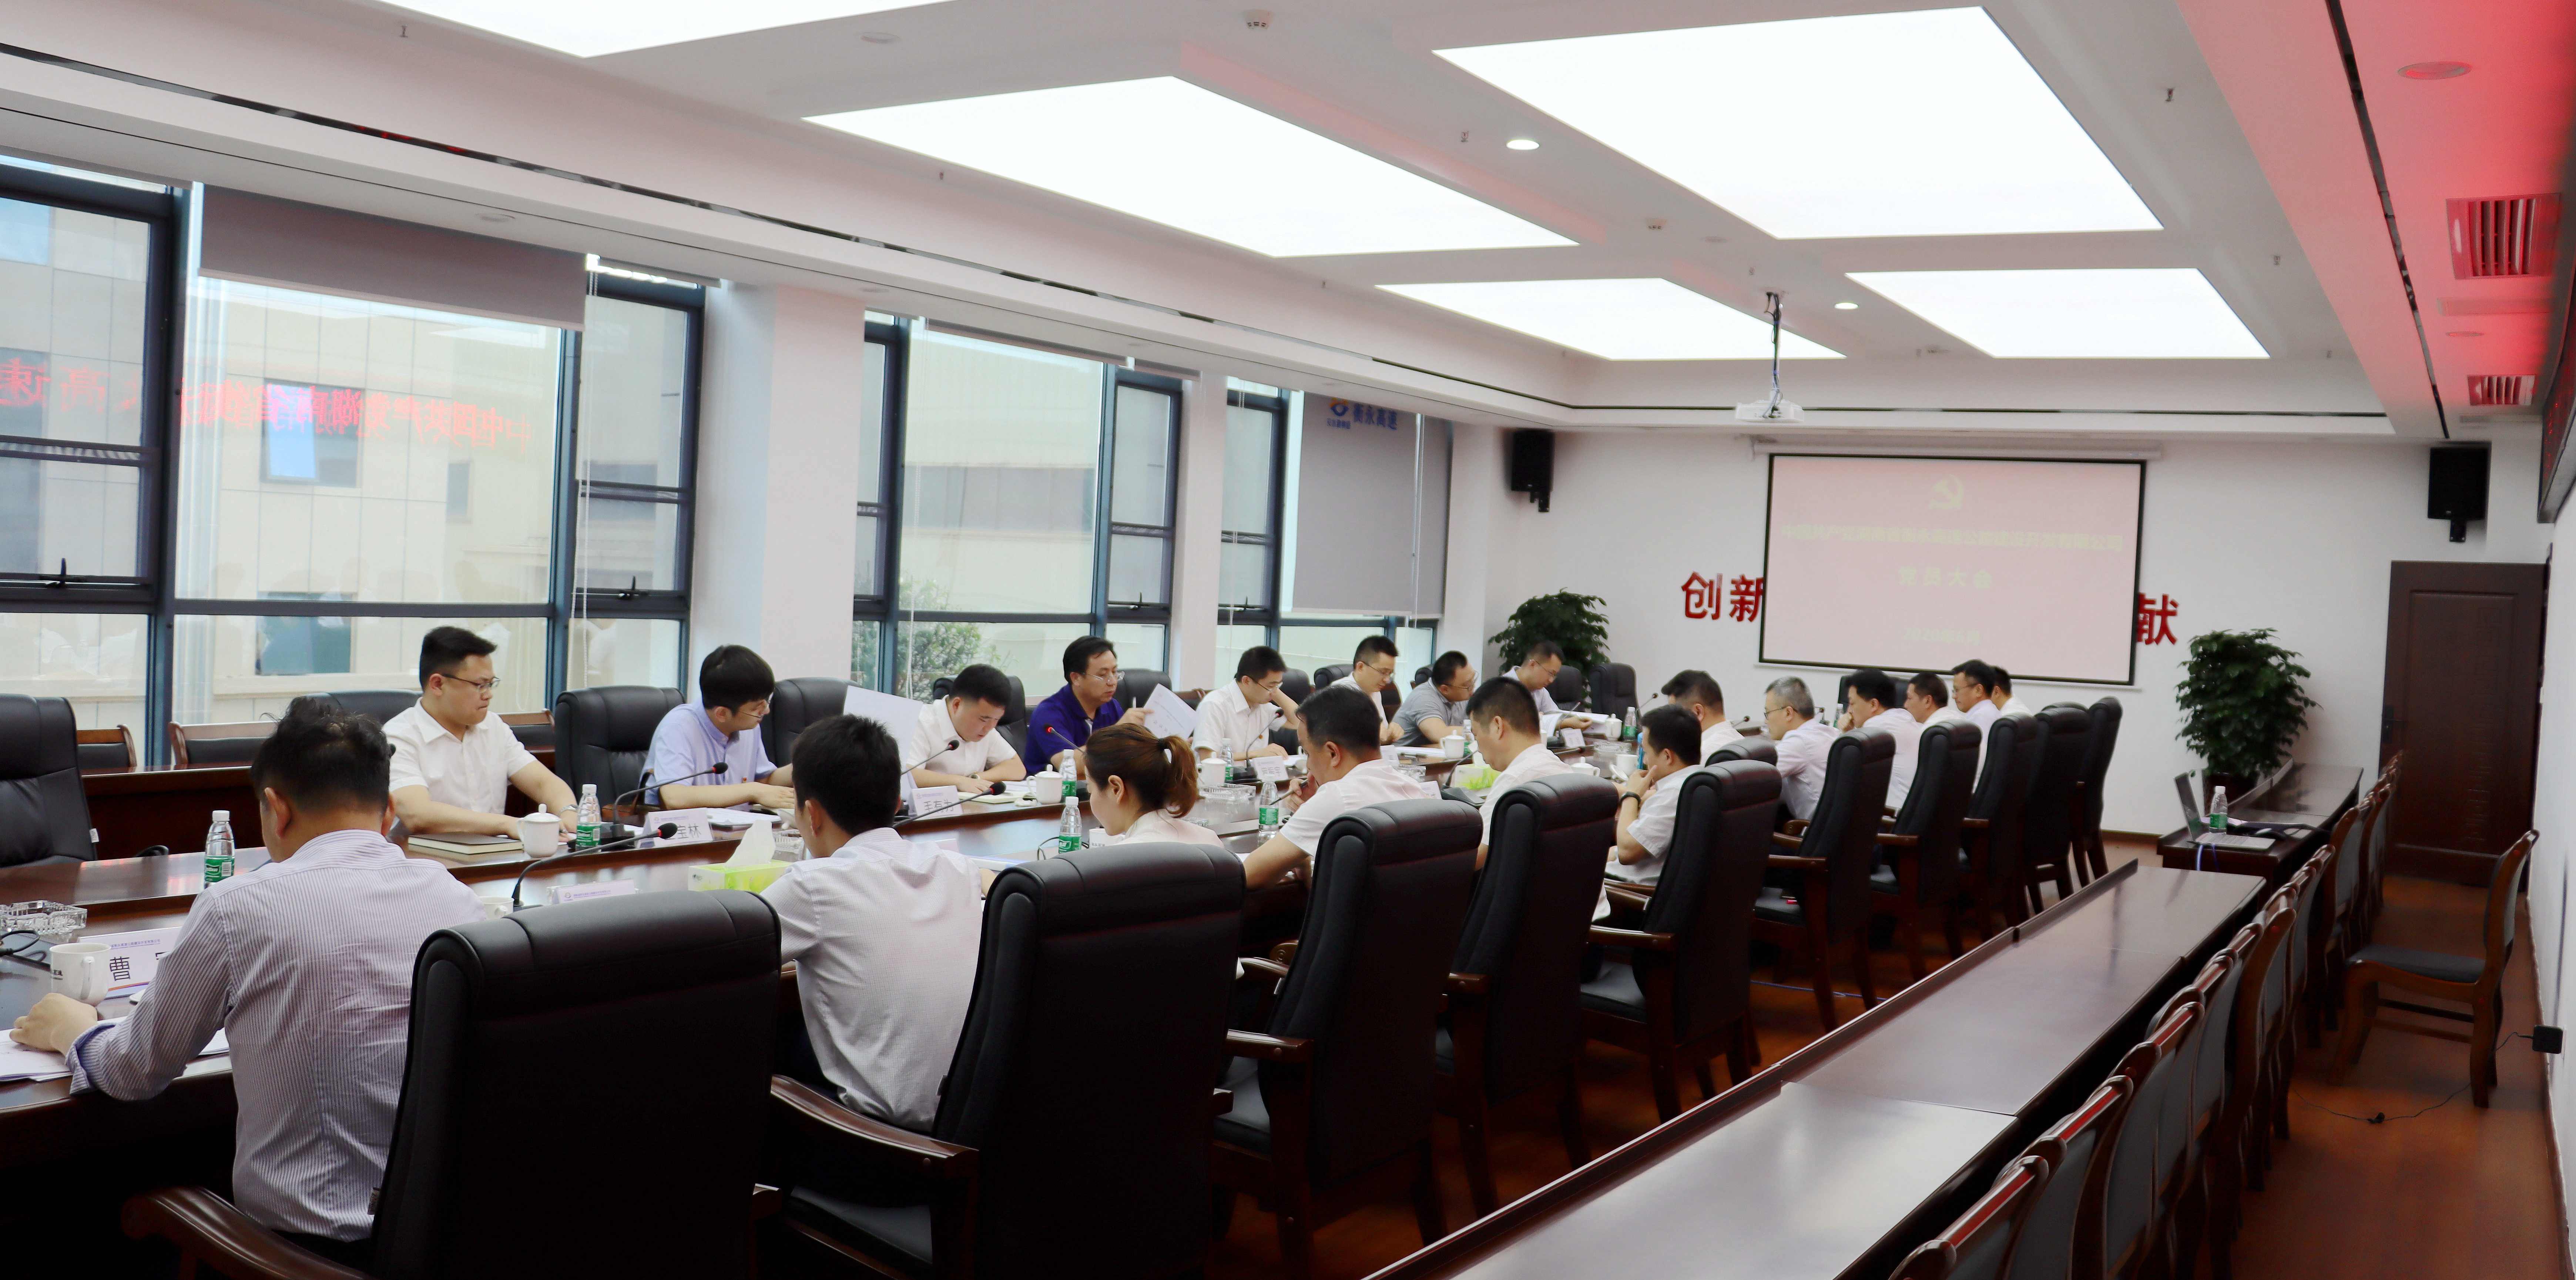 衡永公司召开党员大会选举产生第一届党委和纪委